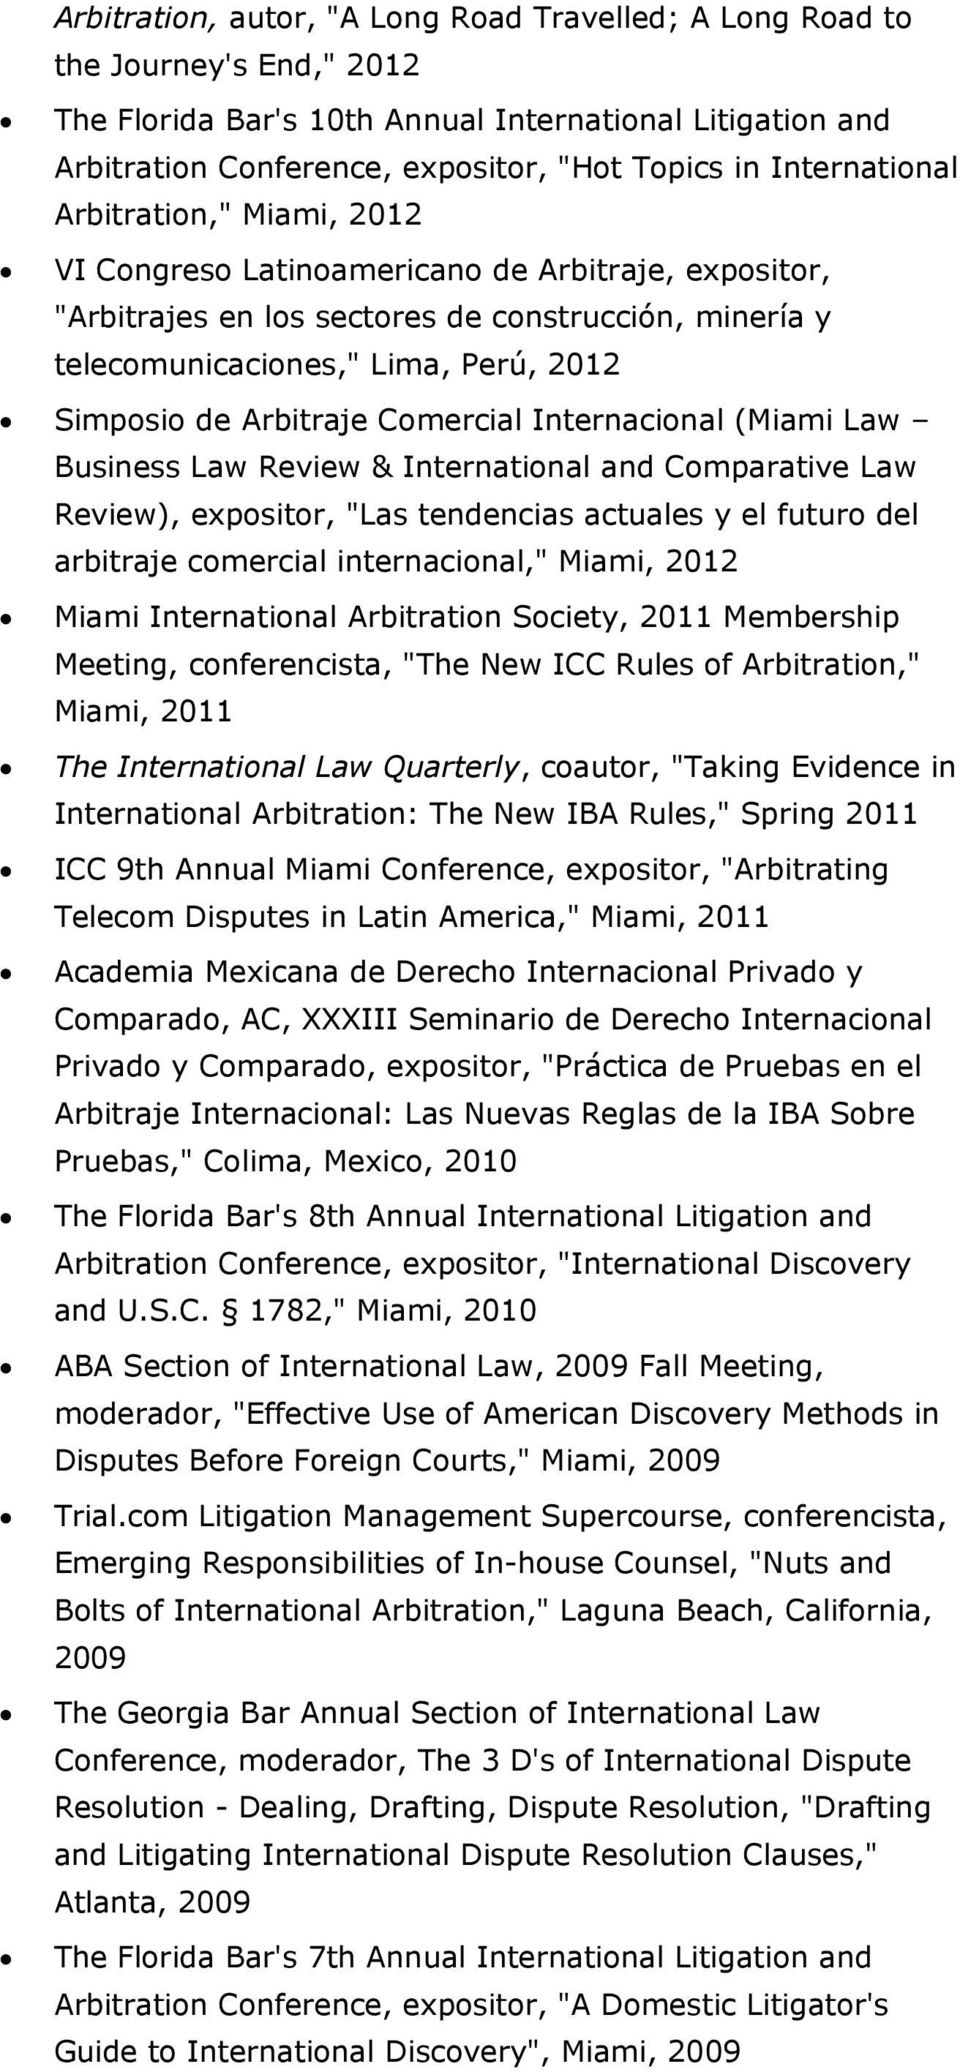 Arbitraje Comercial Internacional (Miami Law Business Law Review & International and Comparative Law Review), expositor, "Las tendencias actuales y el futuro del arbitraje comercial internacional,"